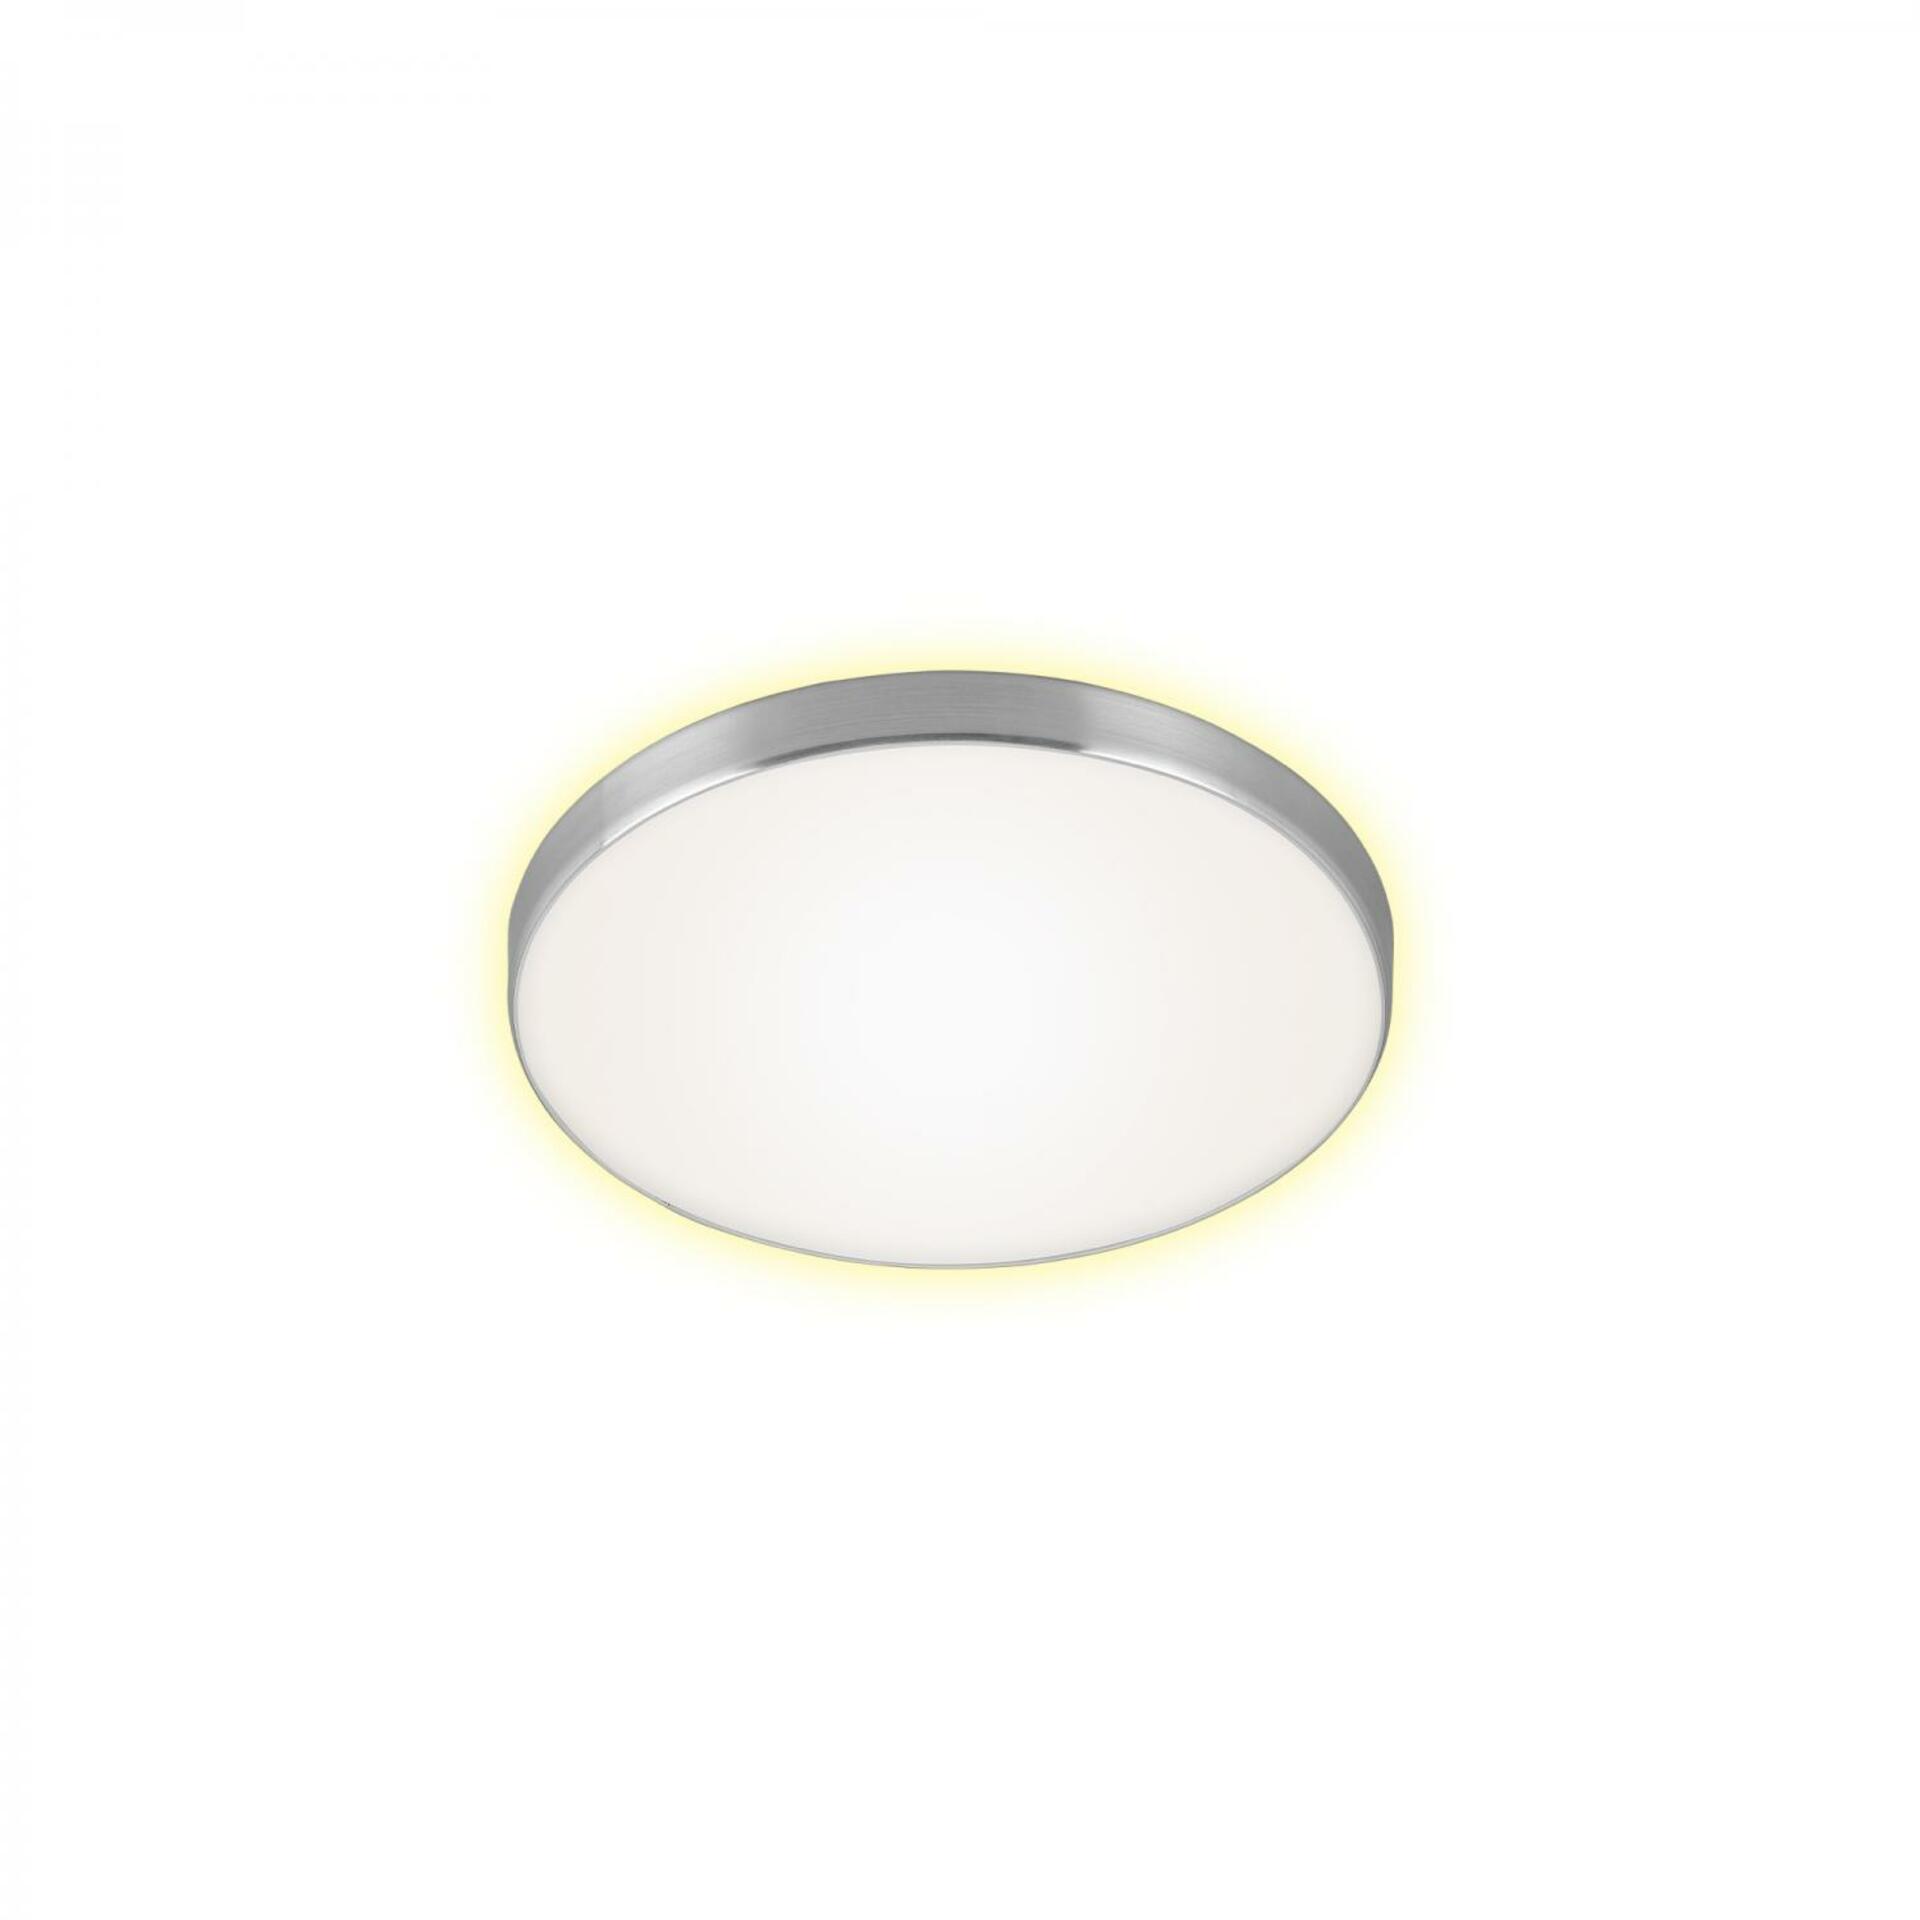 BRILONER LED stropní svítidlo, pr. 28,5 cm, 12 W, hliník-bílé BRI 3443-119